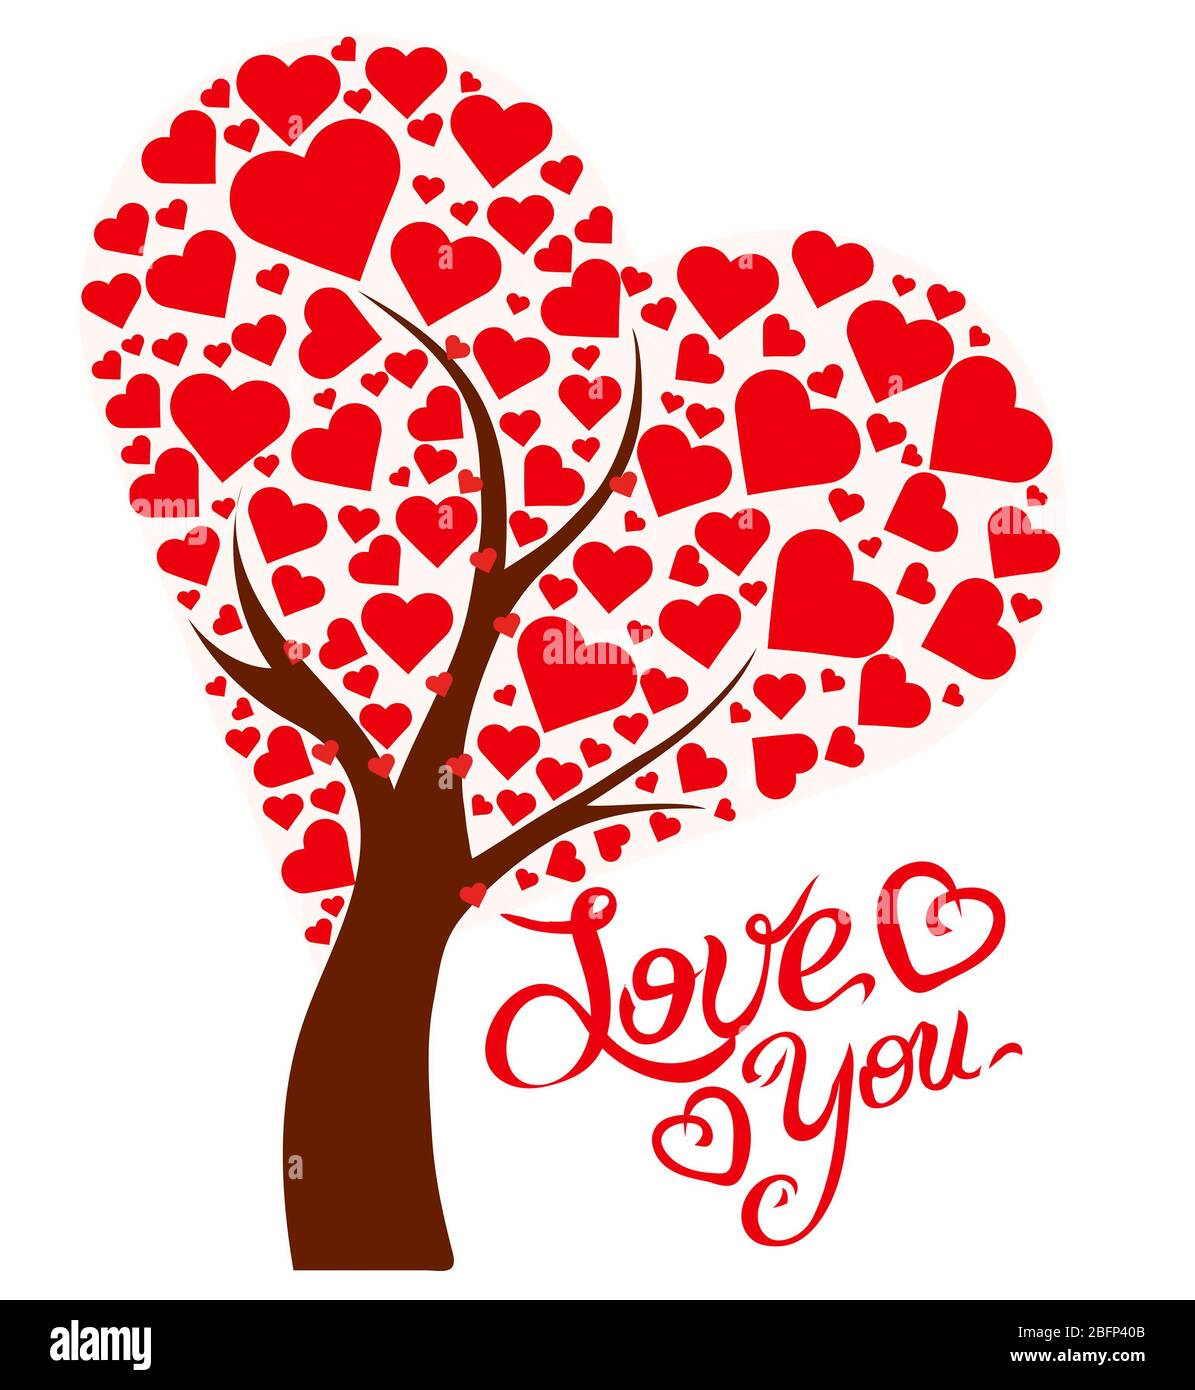 Illustrationsbaum mit Herzen und Text Liebe dich Stockfoto